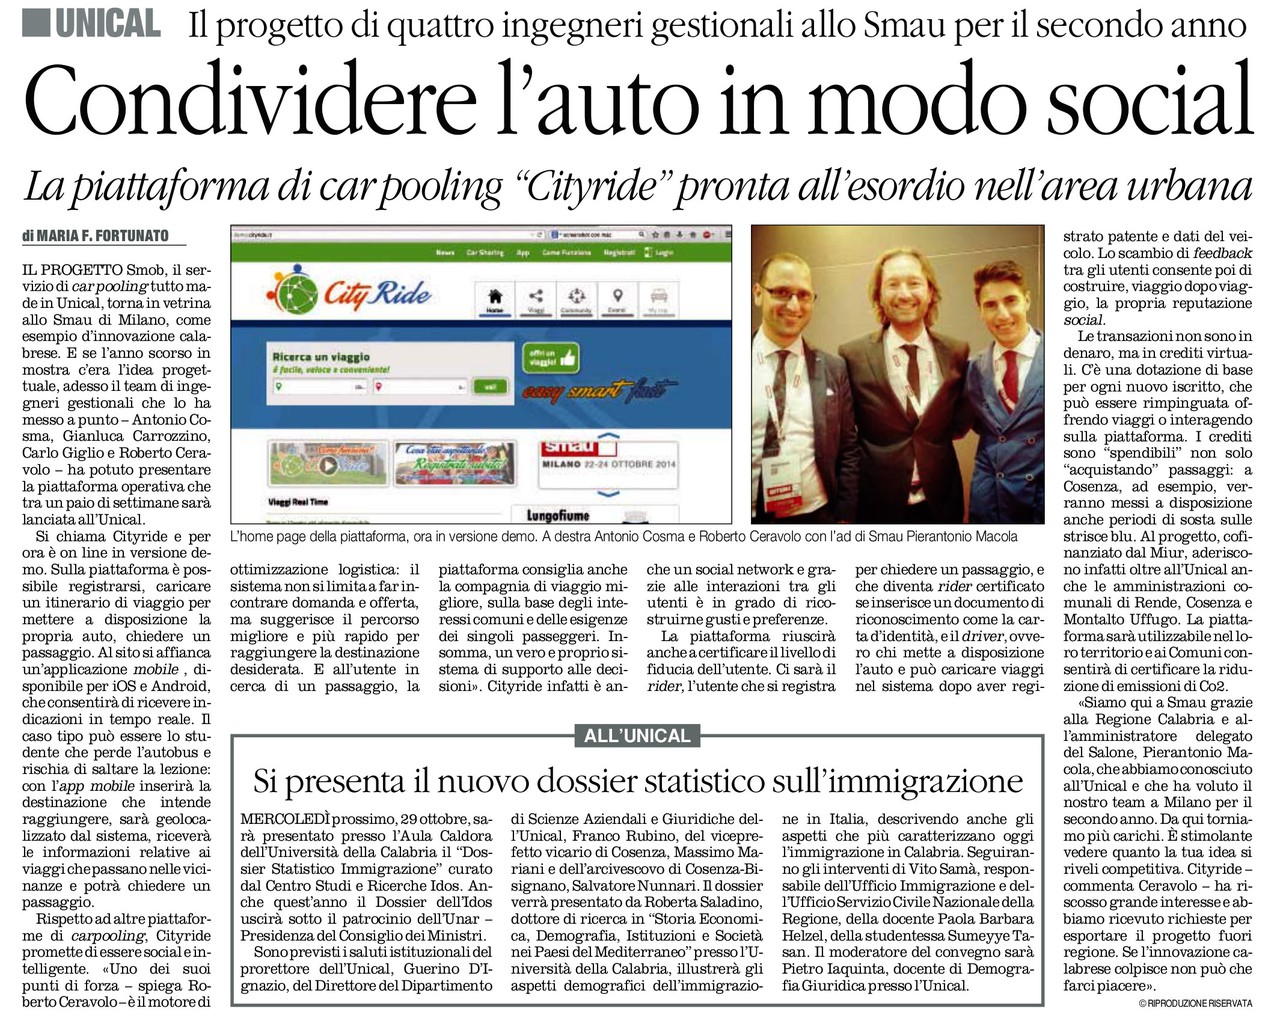 Articolo Quotidiano della Calabria 24.10.2014 jpg